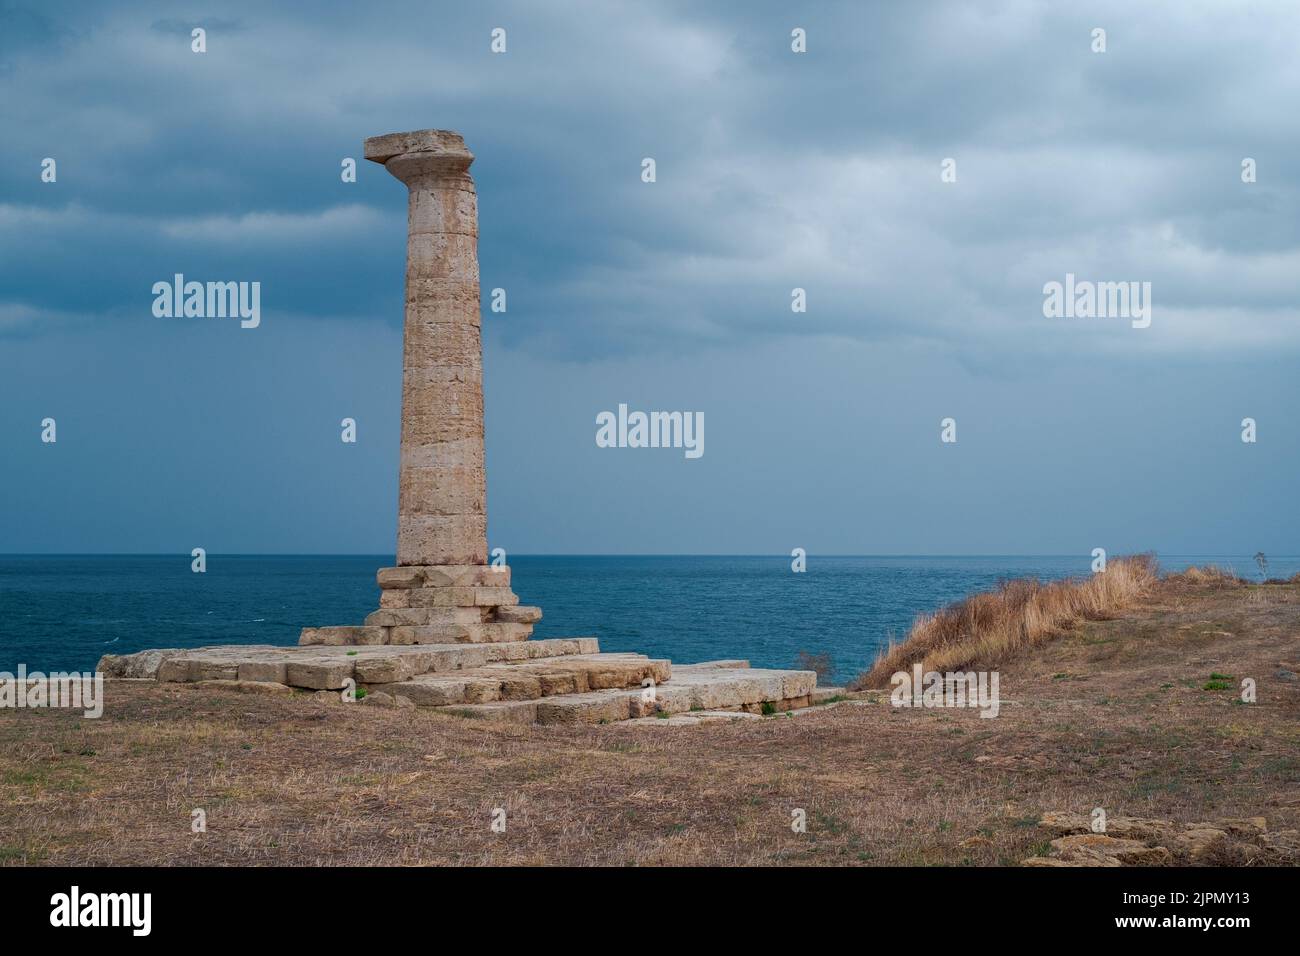 La antigua columna dórica de Capo Colonna en un día nublado. Provincia de Crotone, Calabria, Italia. Foto de stock